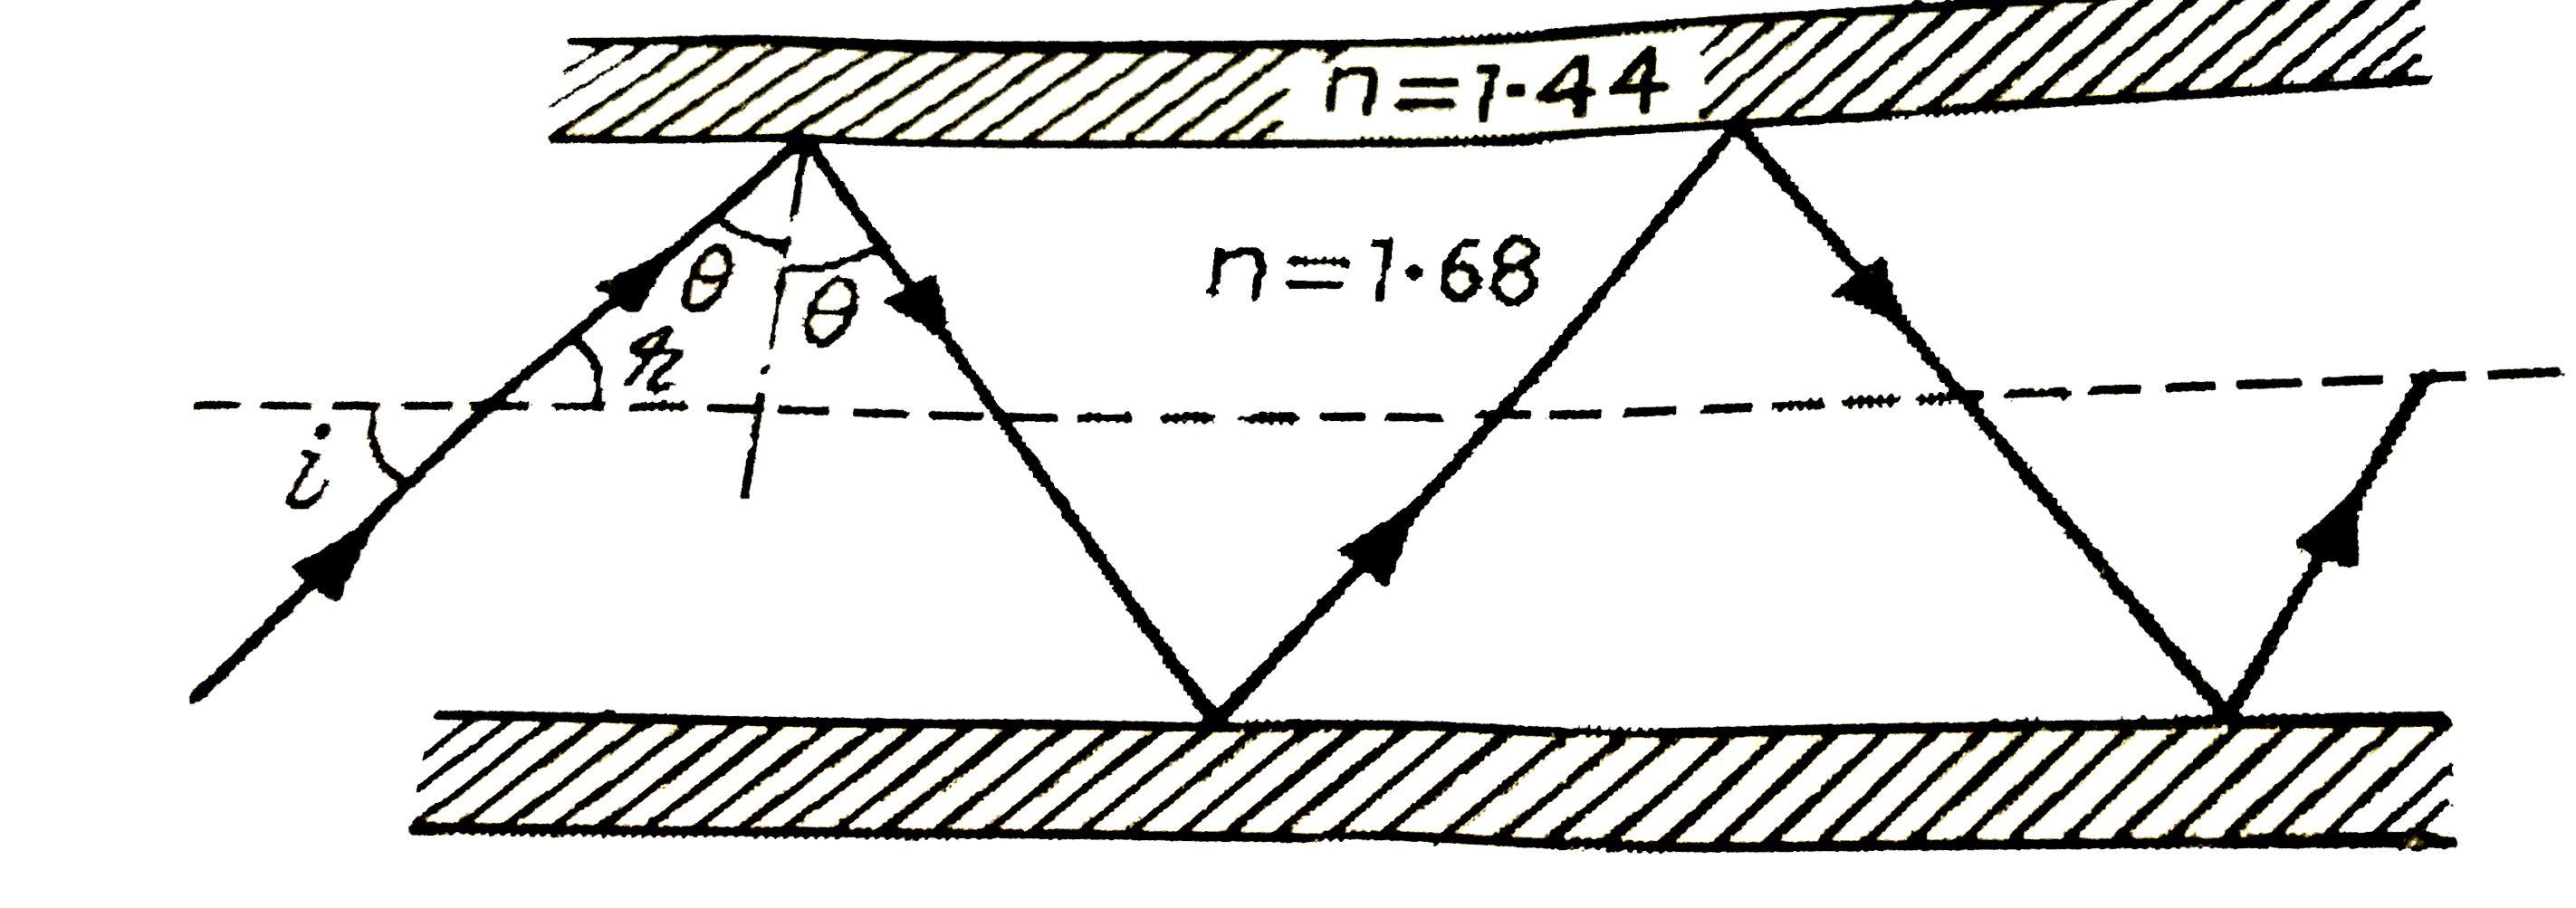 निम्नलिखित प्रश्नो के उत्तर लिखिए -   (a ) चित्र में पवर्तनानक 1.68 के तंतु काँच (glass fibre) से बनी किसी 'प्रकाश नलिका' (लाइट पाइप ) का अनुप्रस्थ परिच्छेद दर्शाया है । नलिका का बाह्य आवरण 1.44 अपवर्तनांक के पदार्थ का बना है । नलिका के अक्ष से आपतित किरणों के कोणों का परिसर, जिनके लिए चित्र में दर्शाया अनुसार नलिका के भीतर पूर्ण परावर्तन होते है ज्ञात कीजिए ।   (b ) यदि पाइप पर बाह्य आवरण न हो तो क्या उत्तर होगा ?